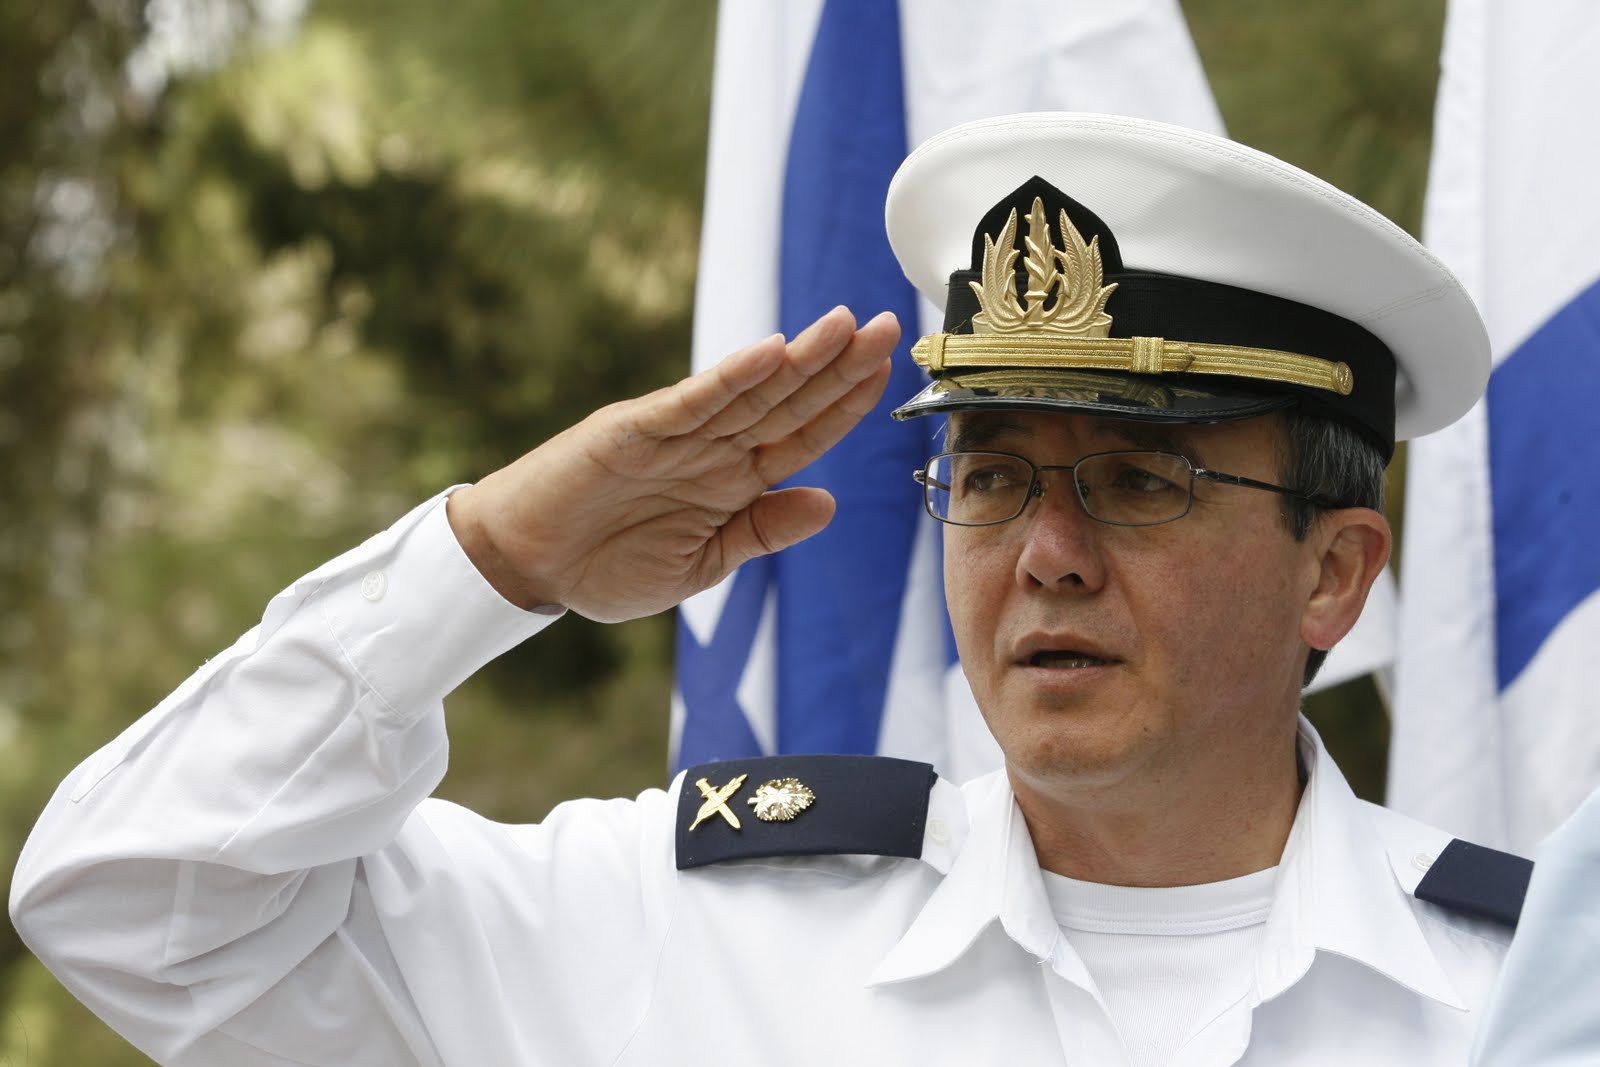 Μίζες σύμβασης εκατομμυρίων «φυλάχτηκαν» στην Κύπρο – Υπό κατ’ οίκο περιορισμό ο πρώην Αρχηγός του Ναυτικού του Ισραήλ –ΦΩΤΟΓΡΑΦΙΕΣ